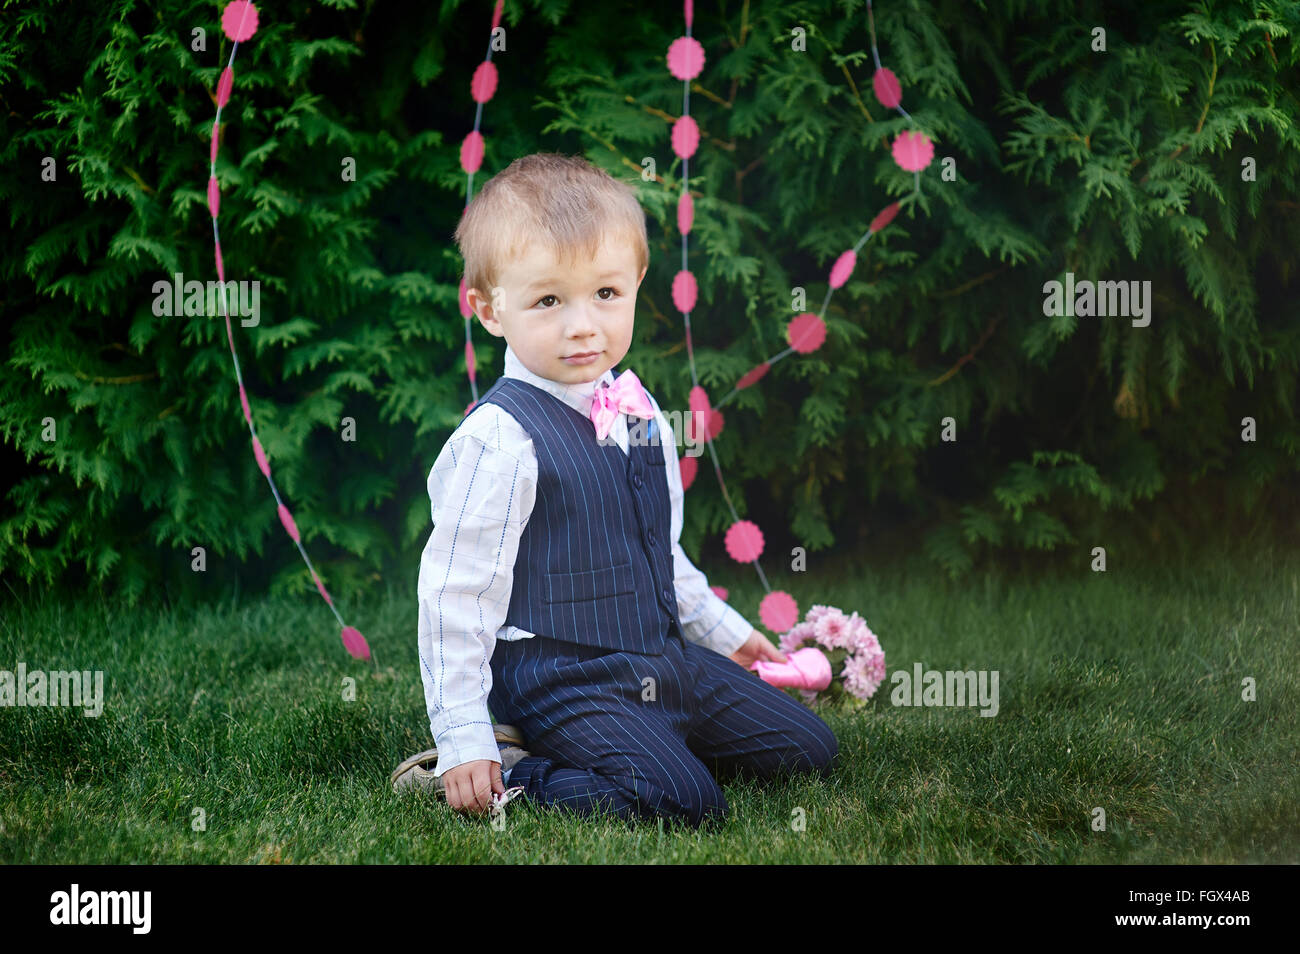 Little Boy in un vestito con un bouquet seduto sull'erba Foto Stock